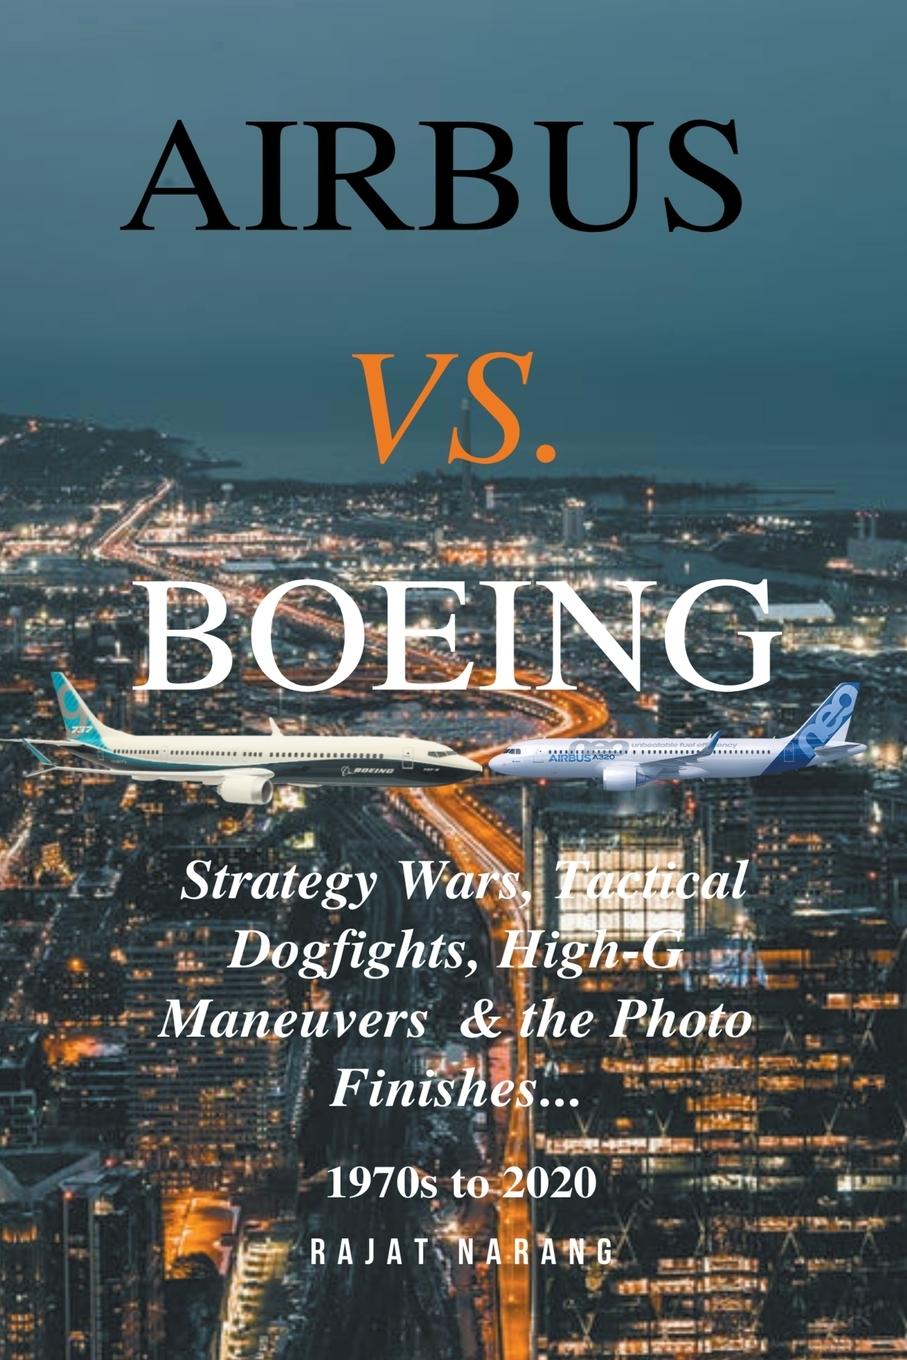 Knjiga Airbus vs. Boeing 